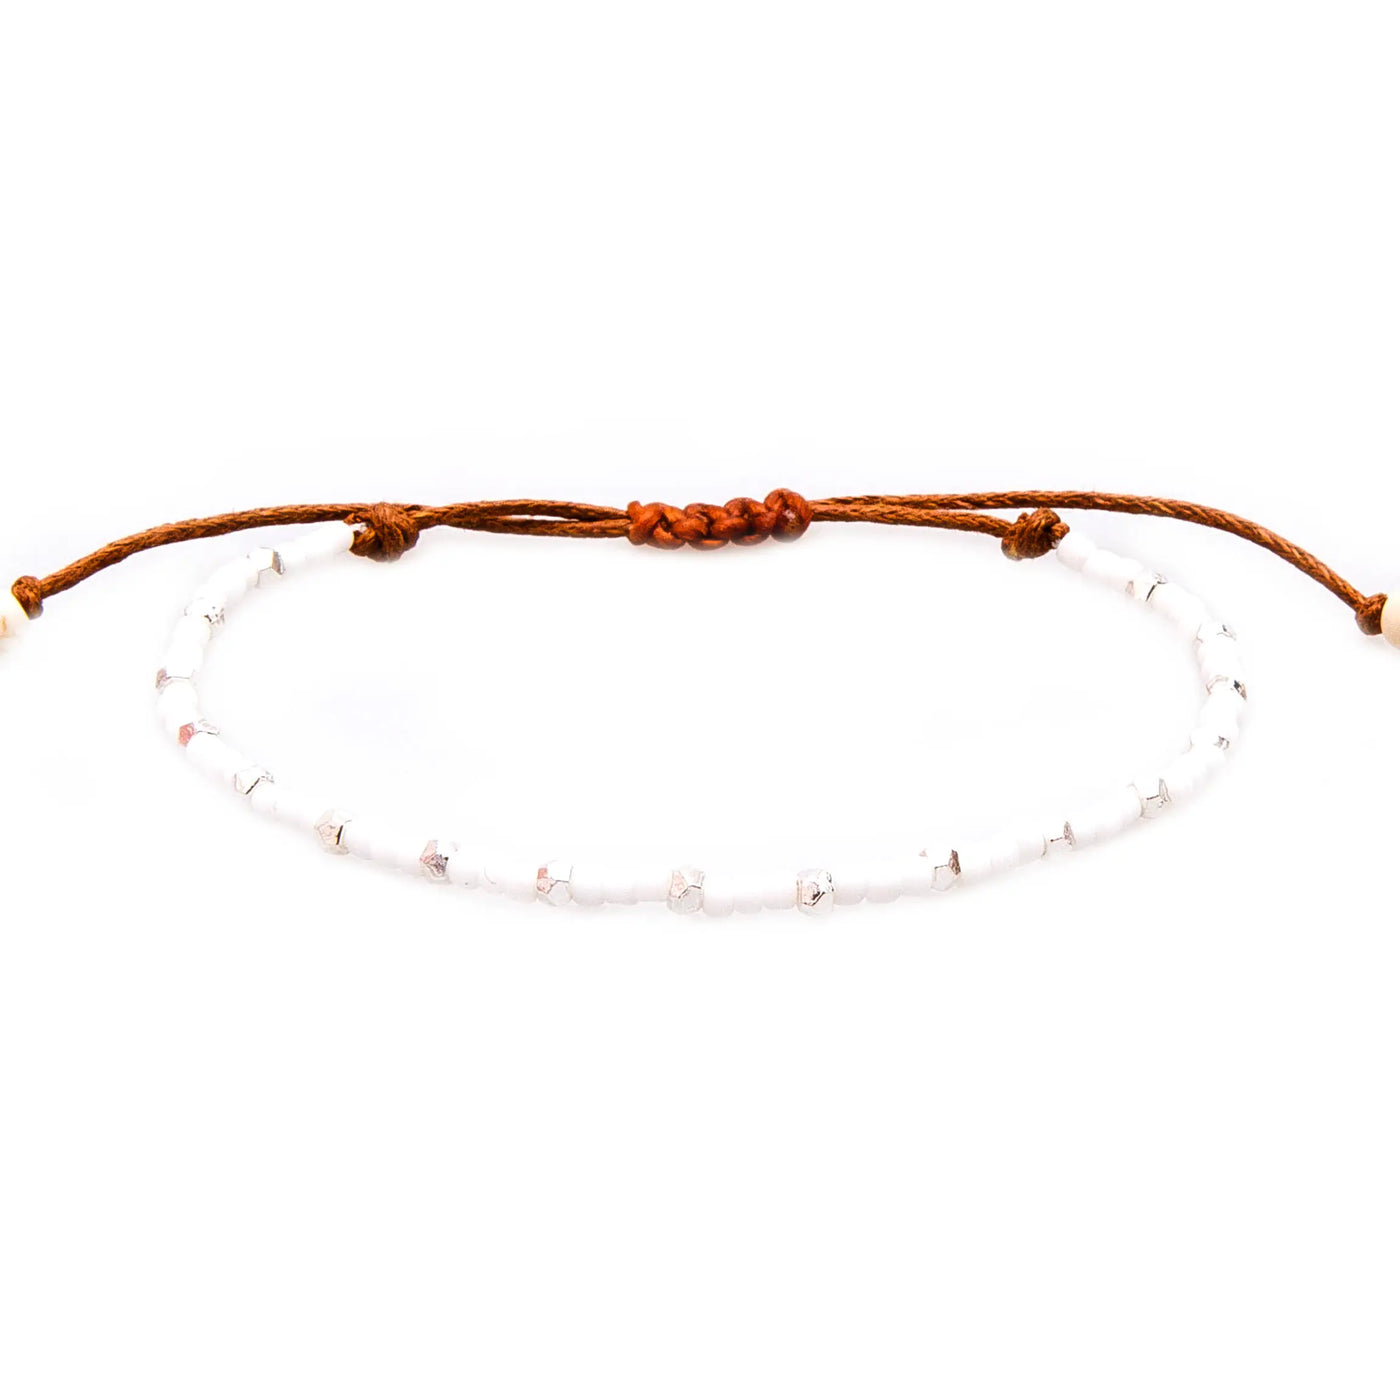 Single strand bead bracelets